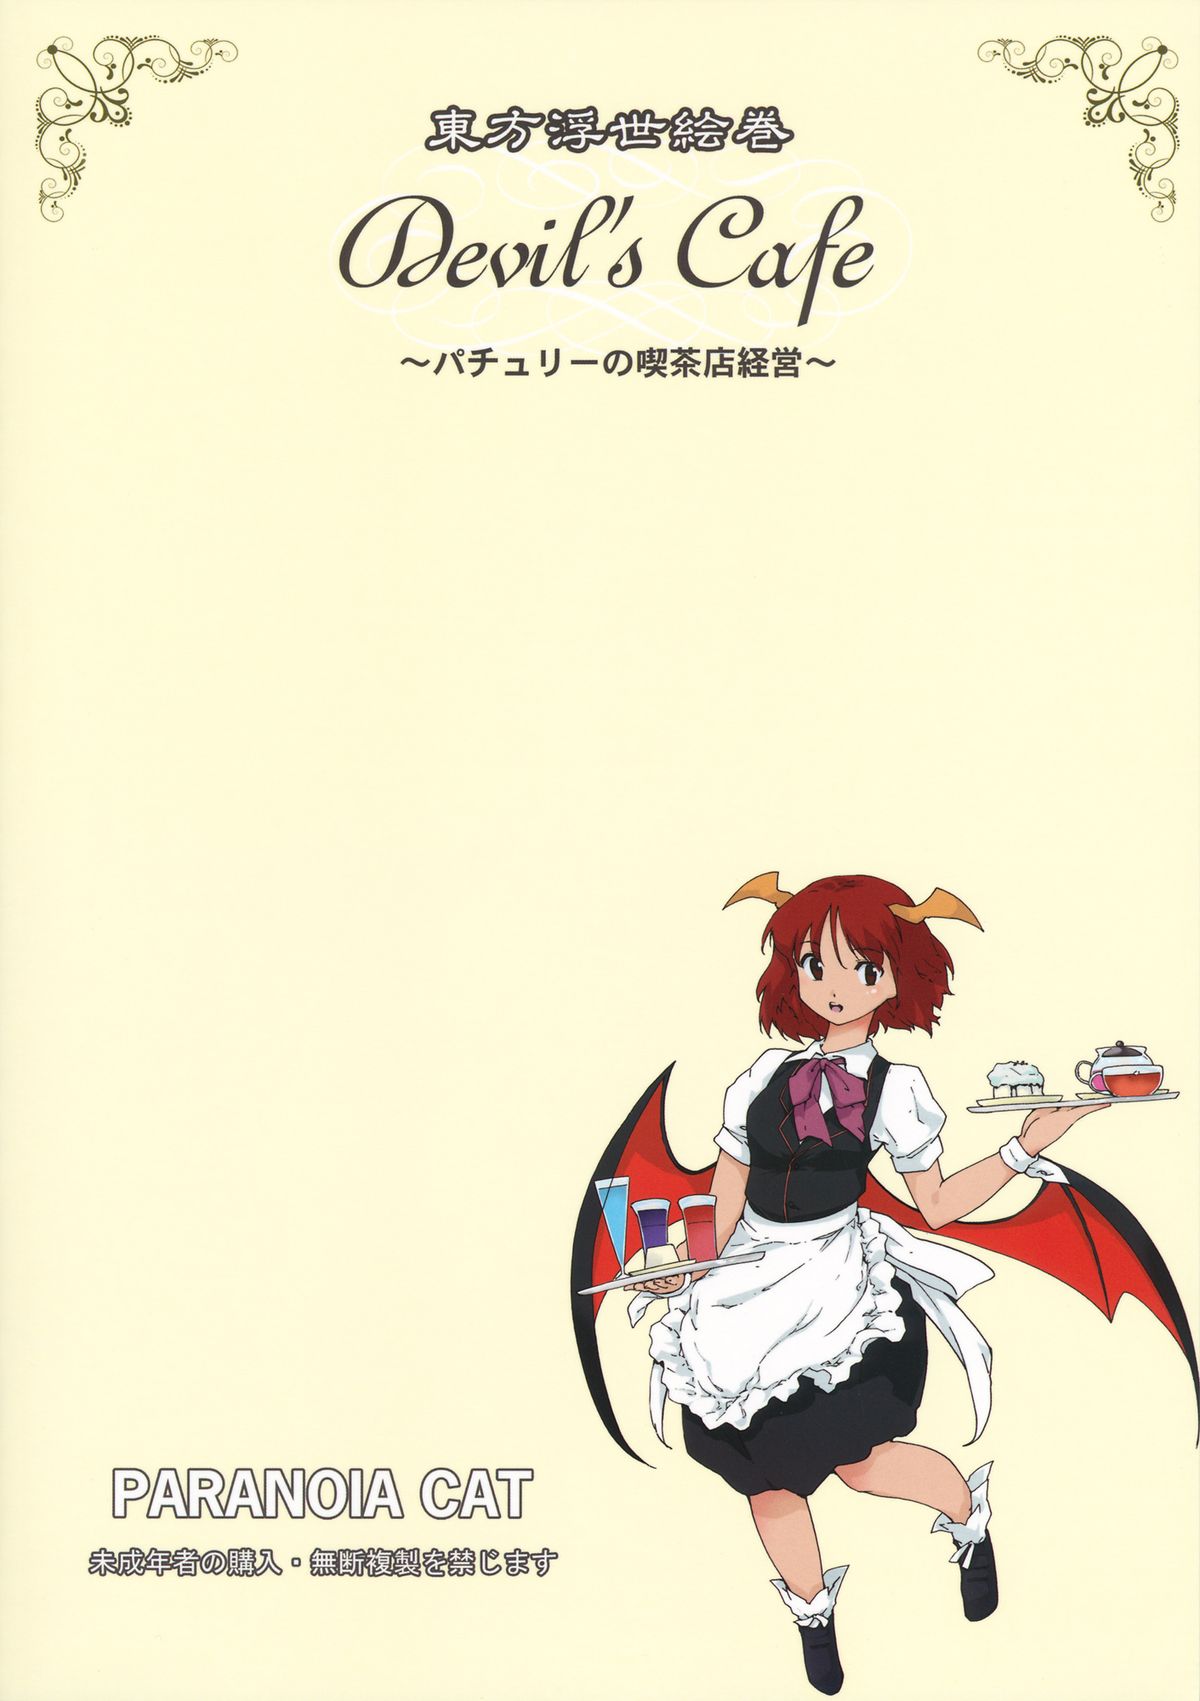 (こみトレ20) [PARANOIA CAT (藤原俊一)] 東方浮世絵巻 devil's cafe (東方Project)